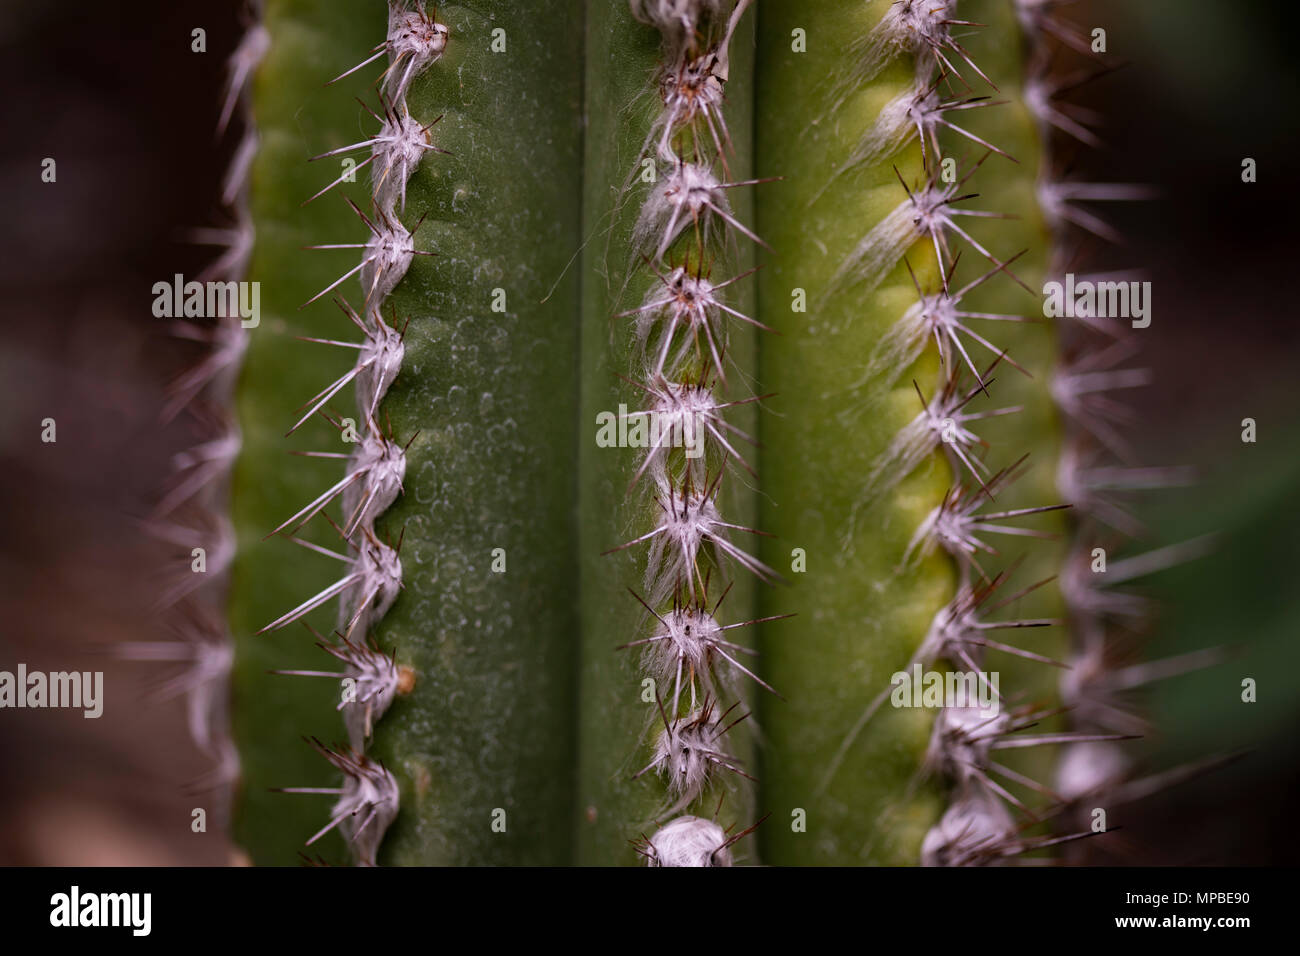 Closeup detail of the cactus Pilocereus leucocephalus Stock Photo